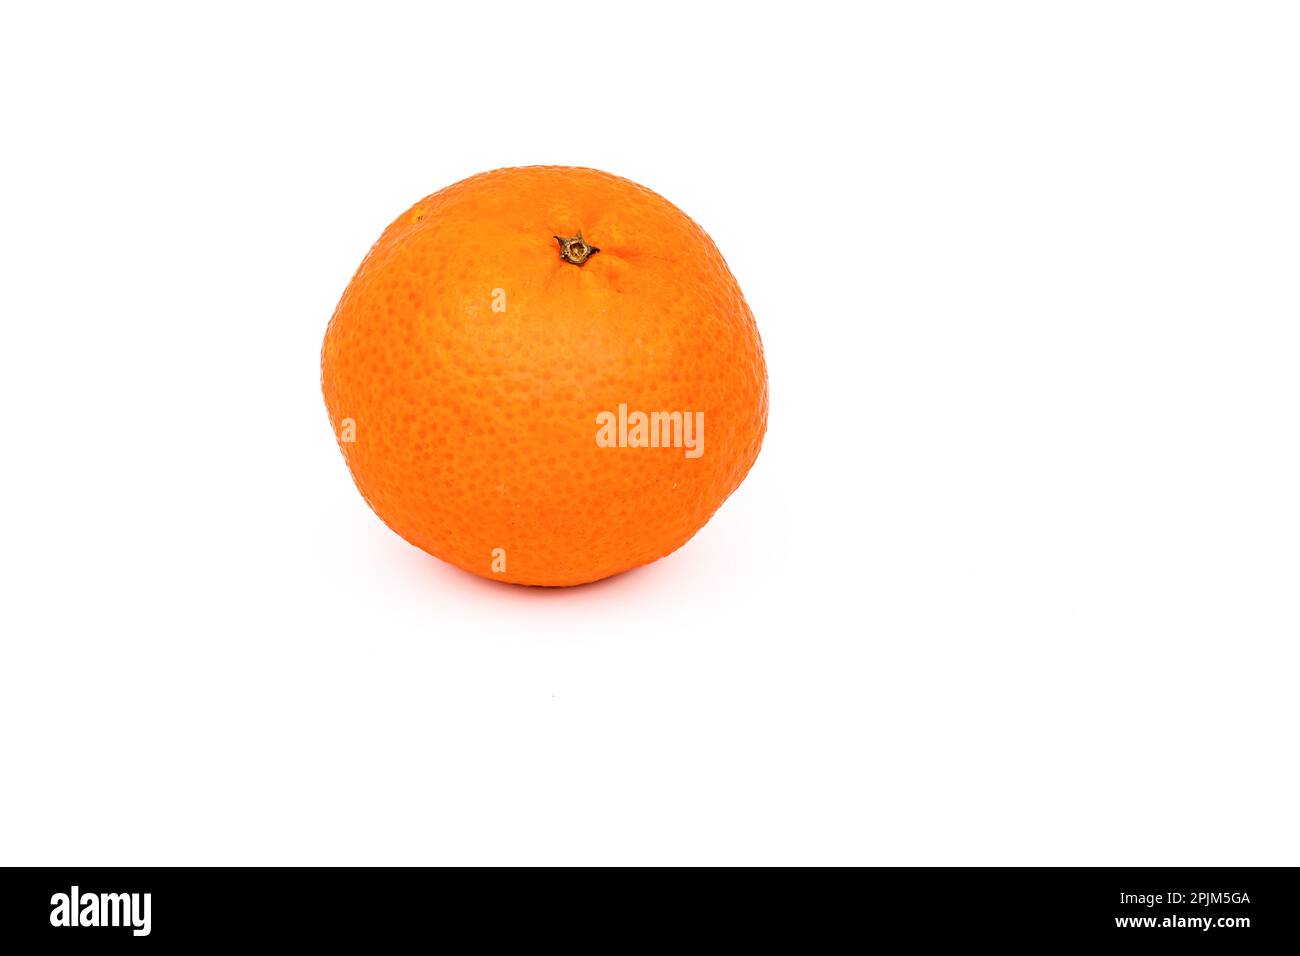 Un mandarino arancione come cibo sano ritagliato su sfondo bianco come studio shot Foto Stock